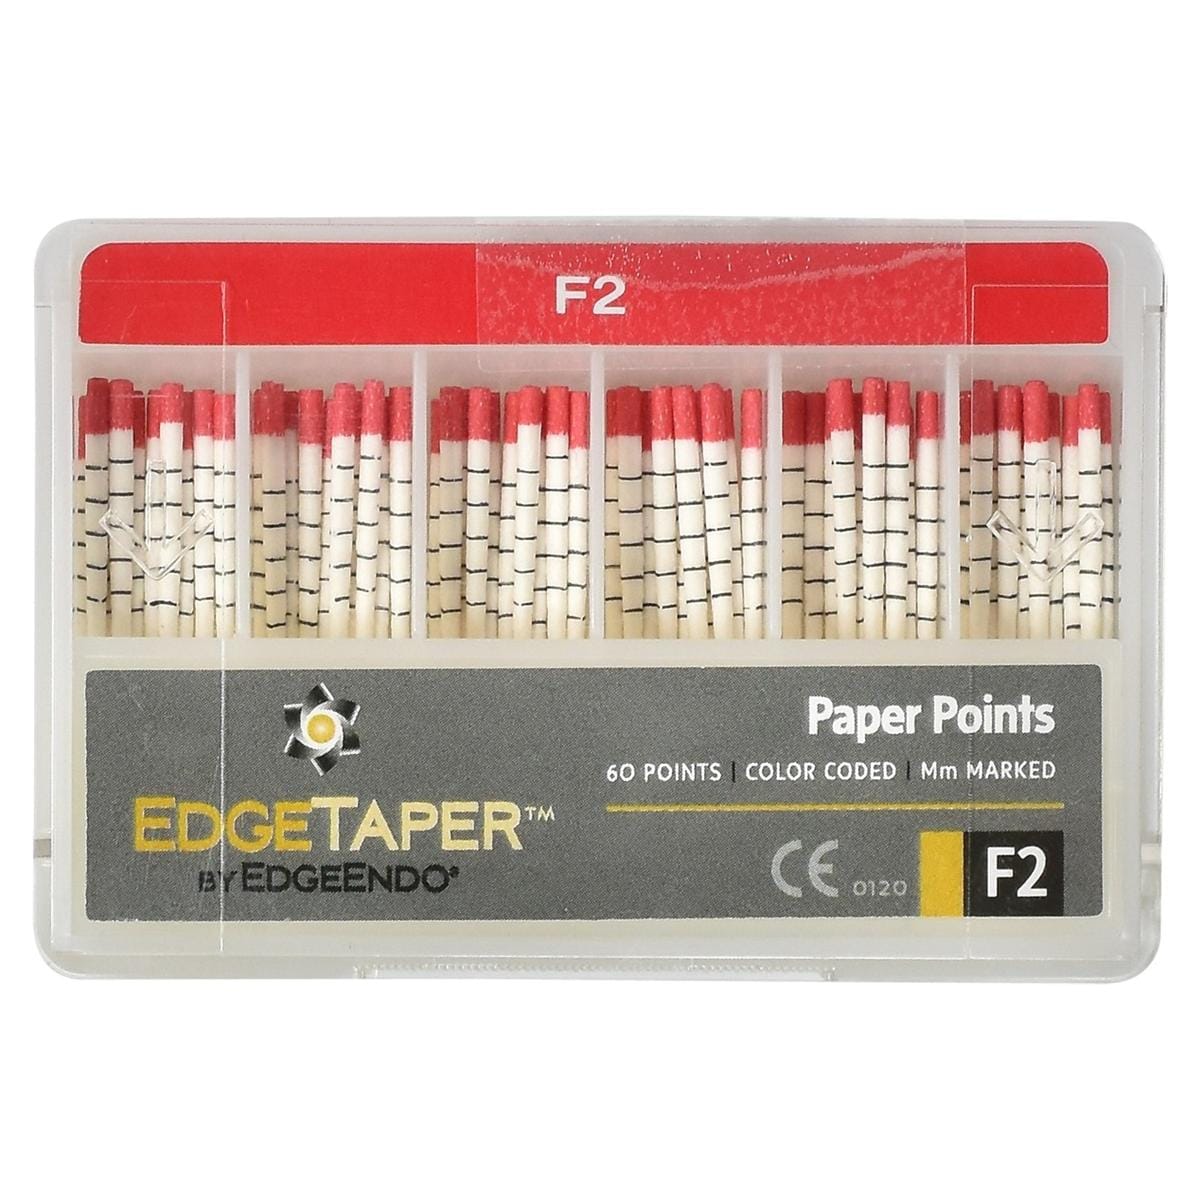 EdgeTaper Paper Point - F2